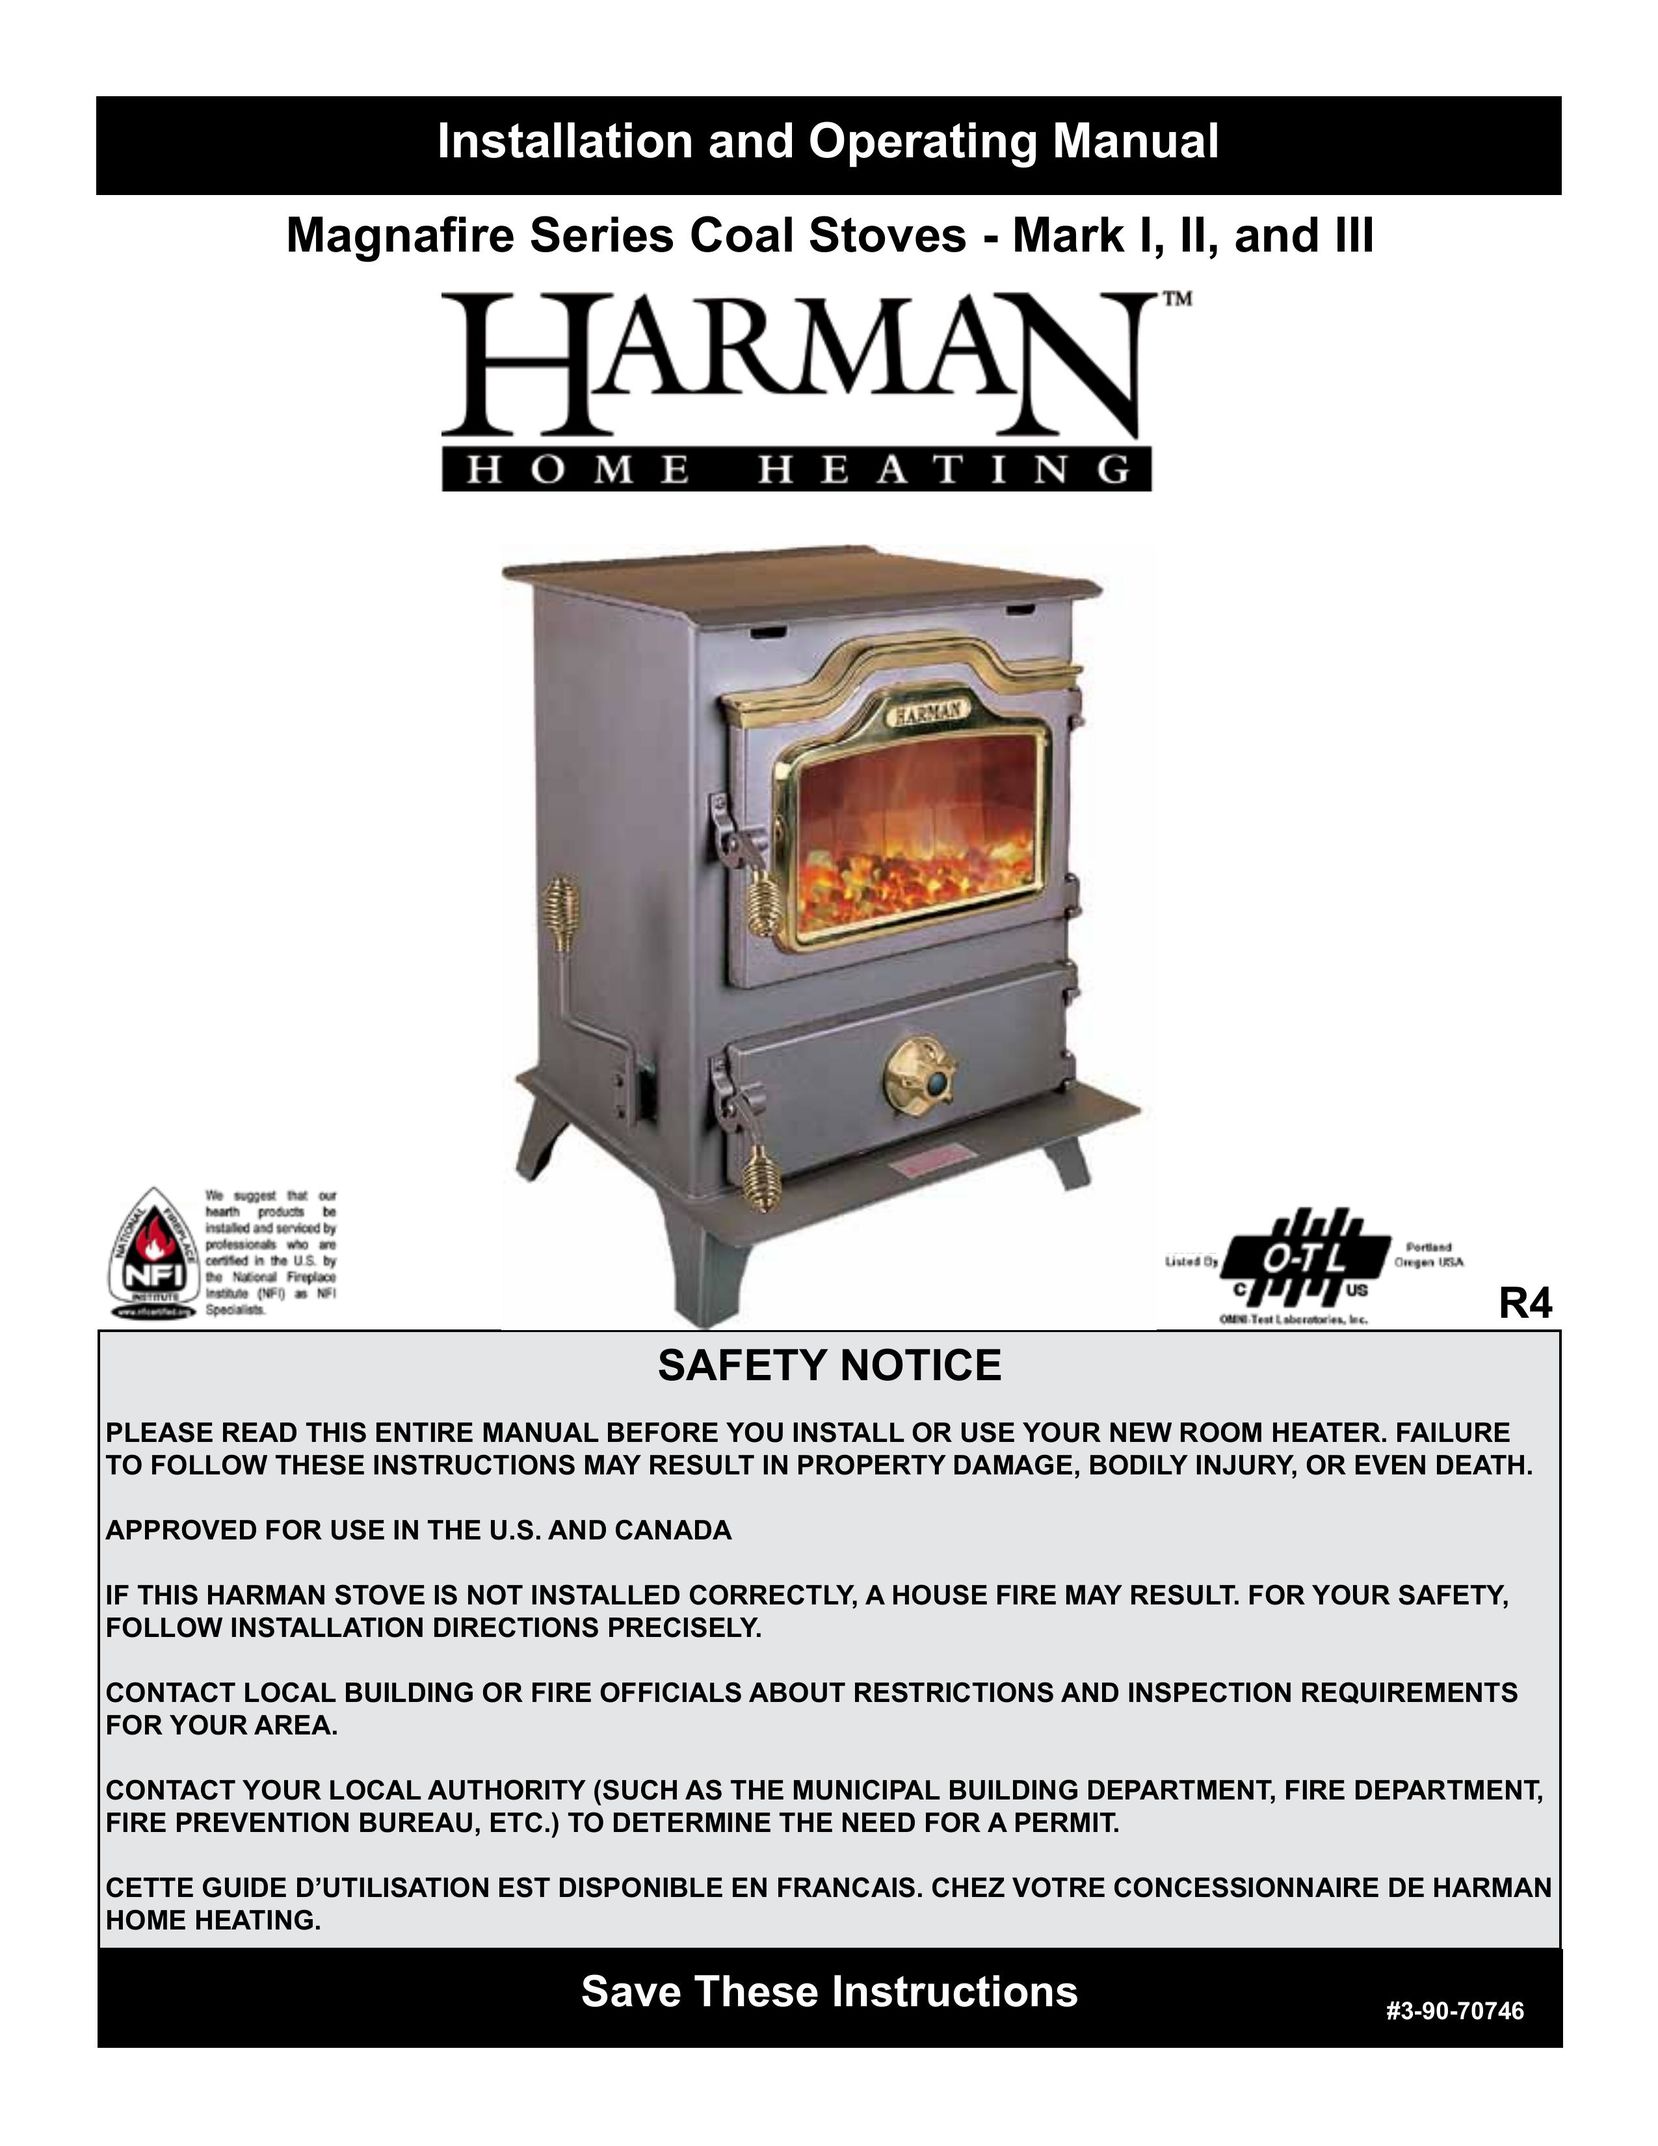 Harman Stove Company MARK II Stove User Manual